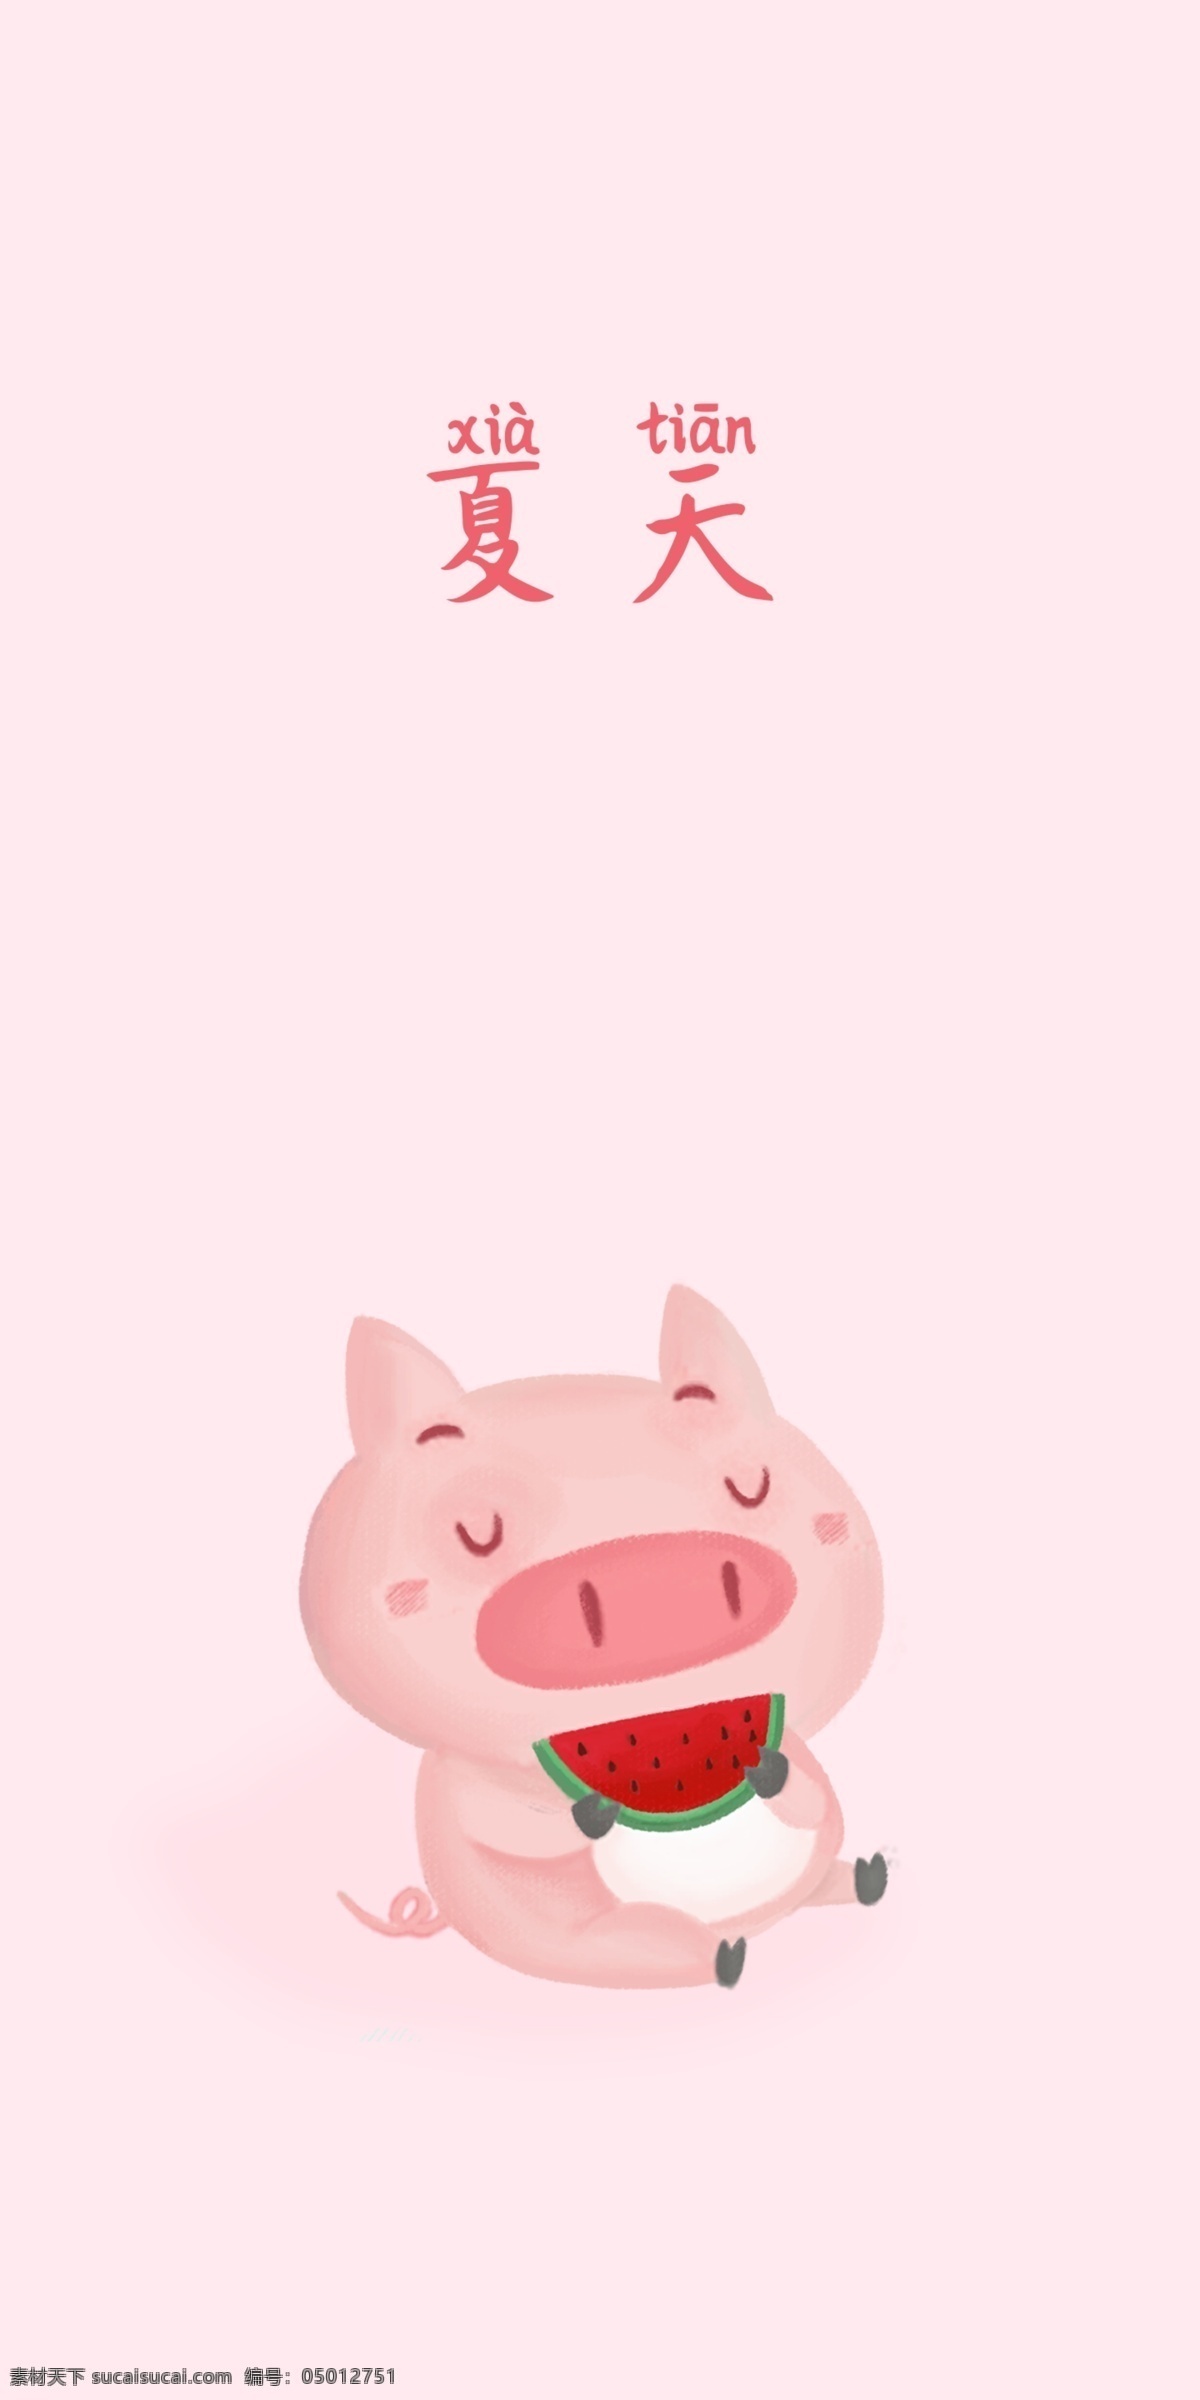 粉色 可爱 小 猪 夏天 女生 手机 壁纸 小猪 移动界面设计 客户端界面